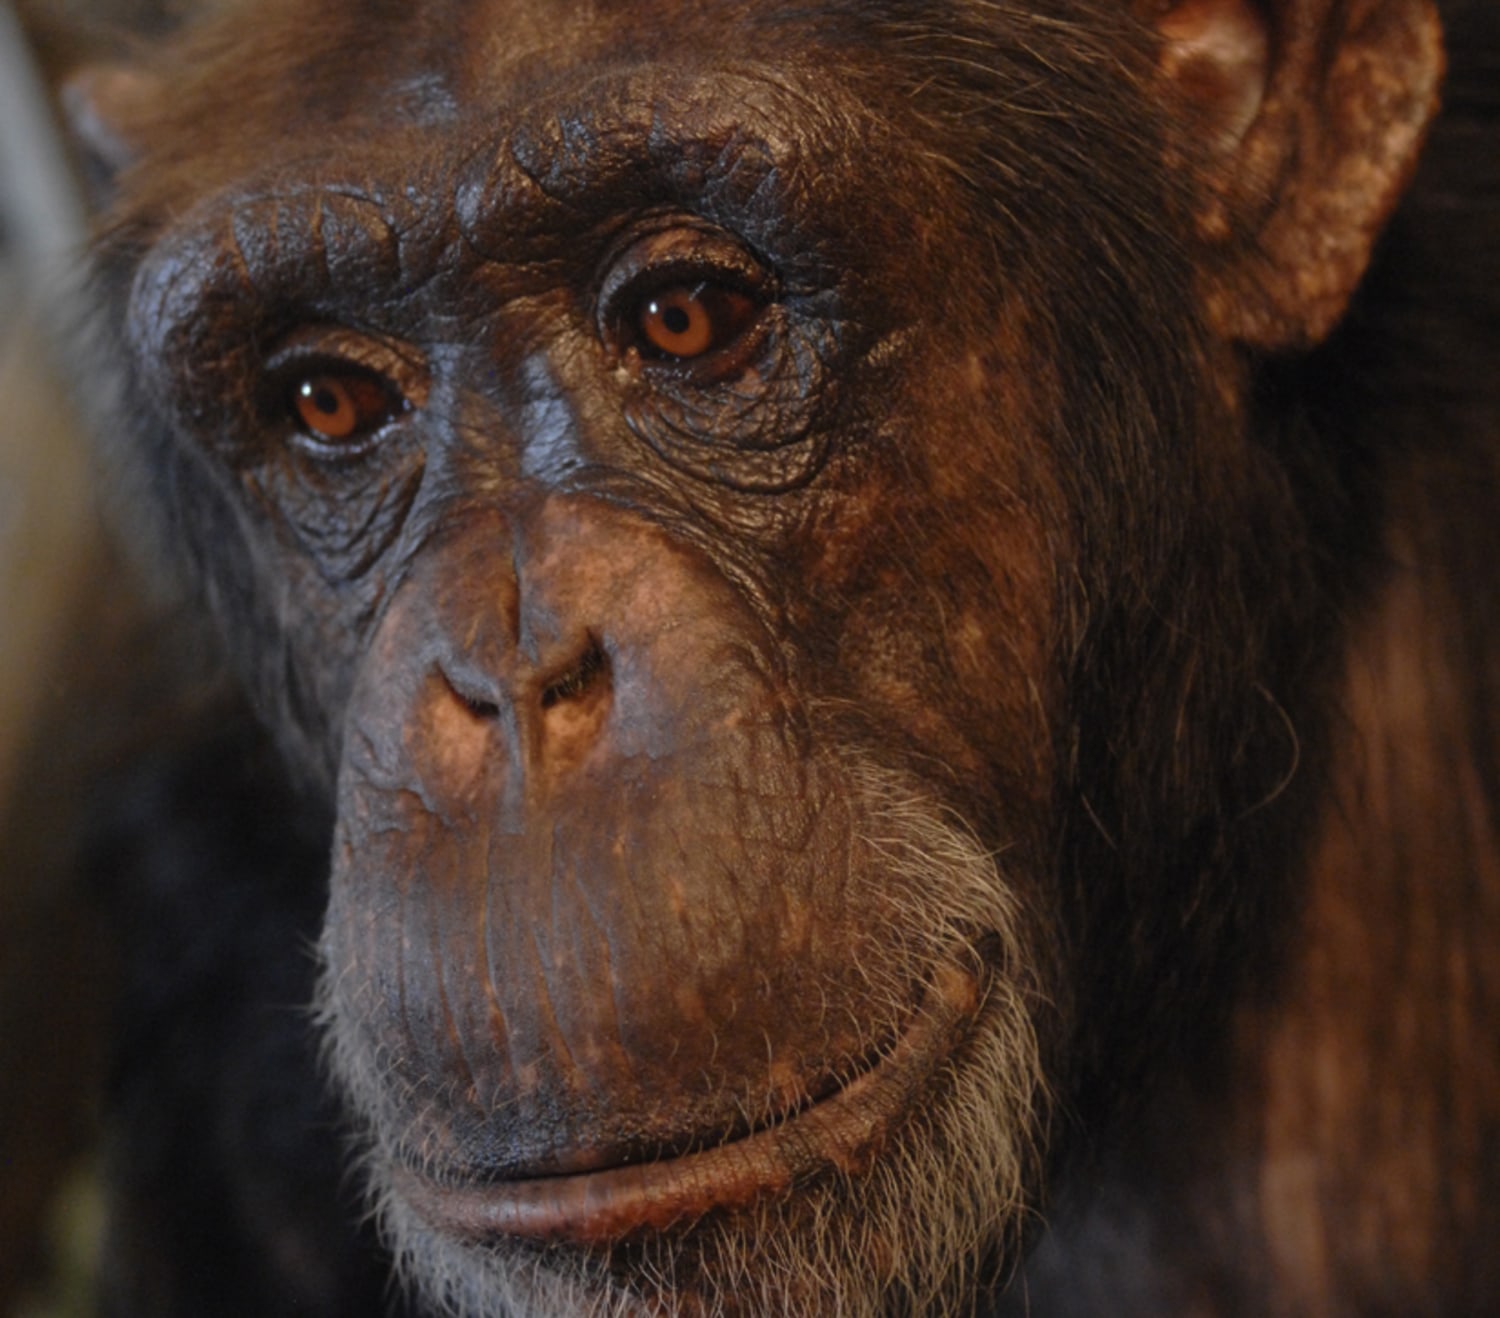 Word: Like a human, smart chimp understands speech